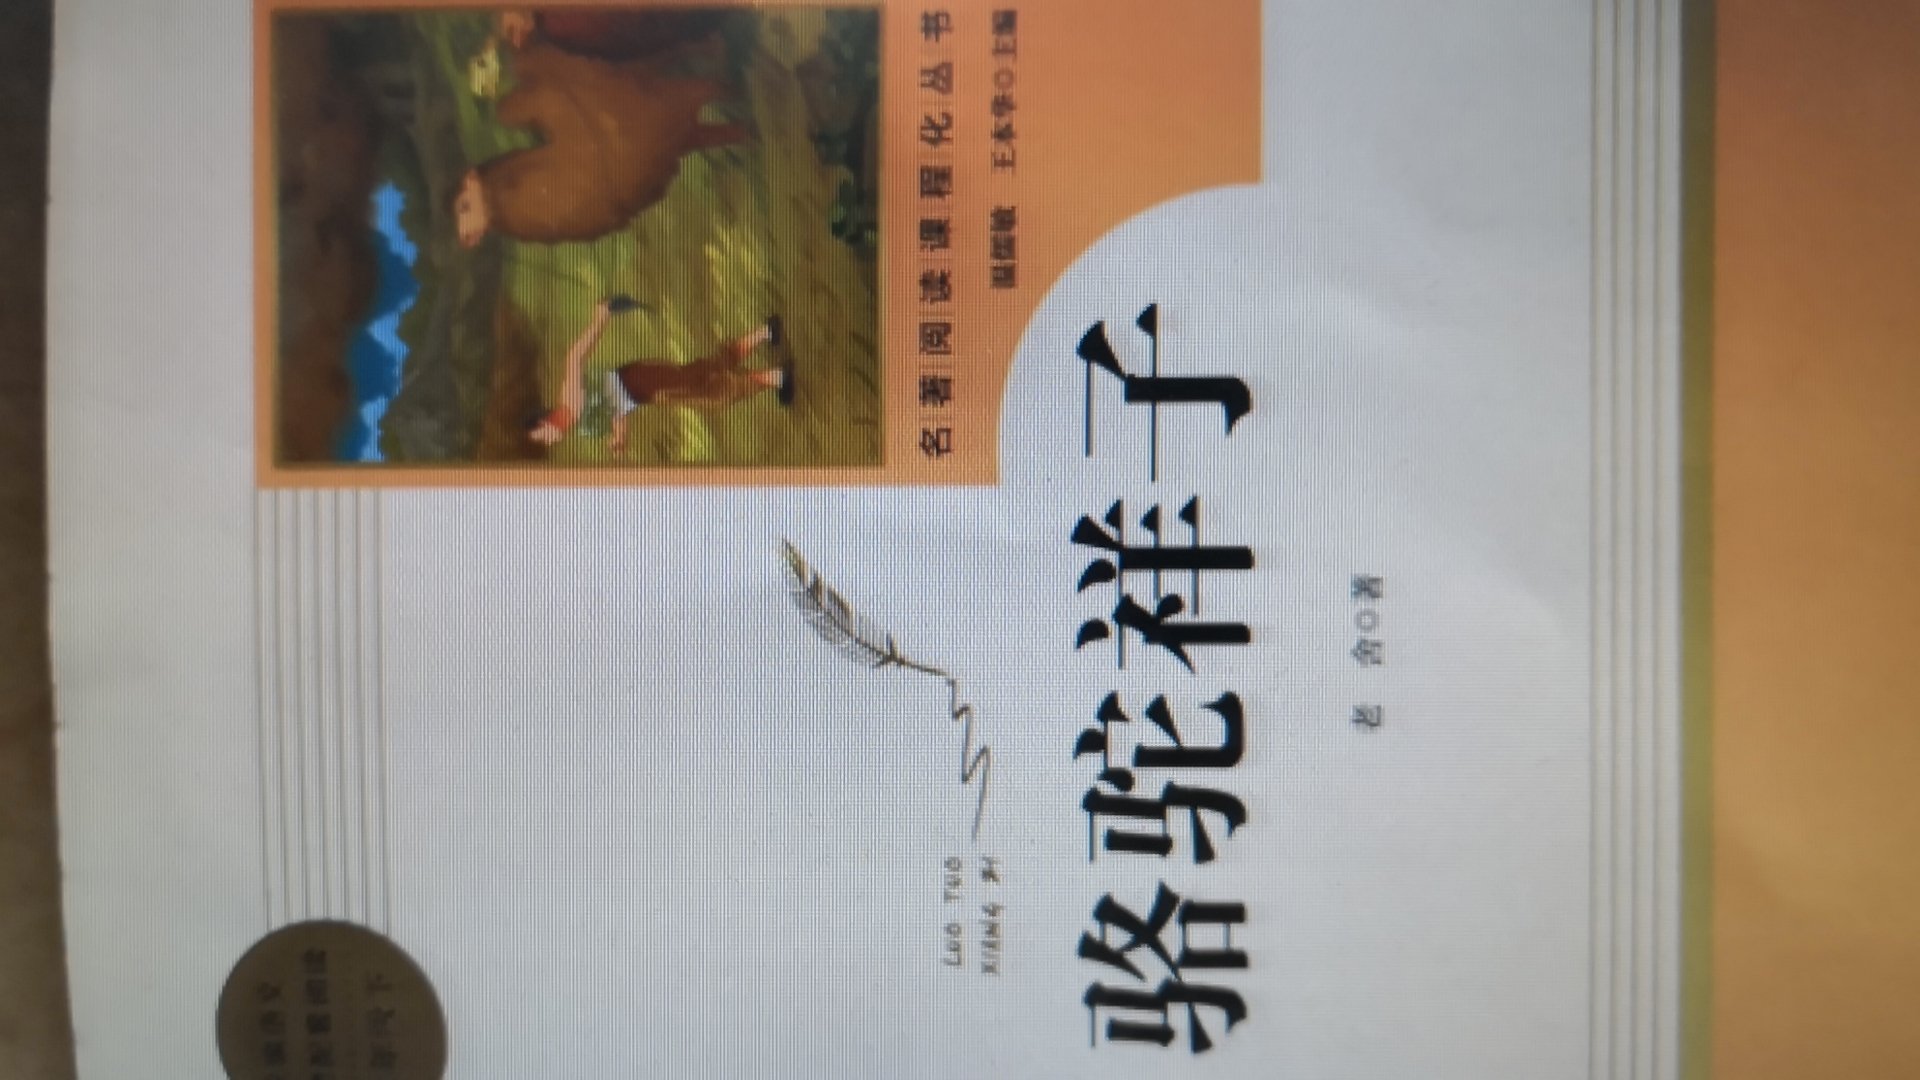 我也不知道怎么说，因为它只是一本很普通的书，不过唯一有点惊讶的是，居然要从外地寄来广州的。